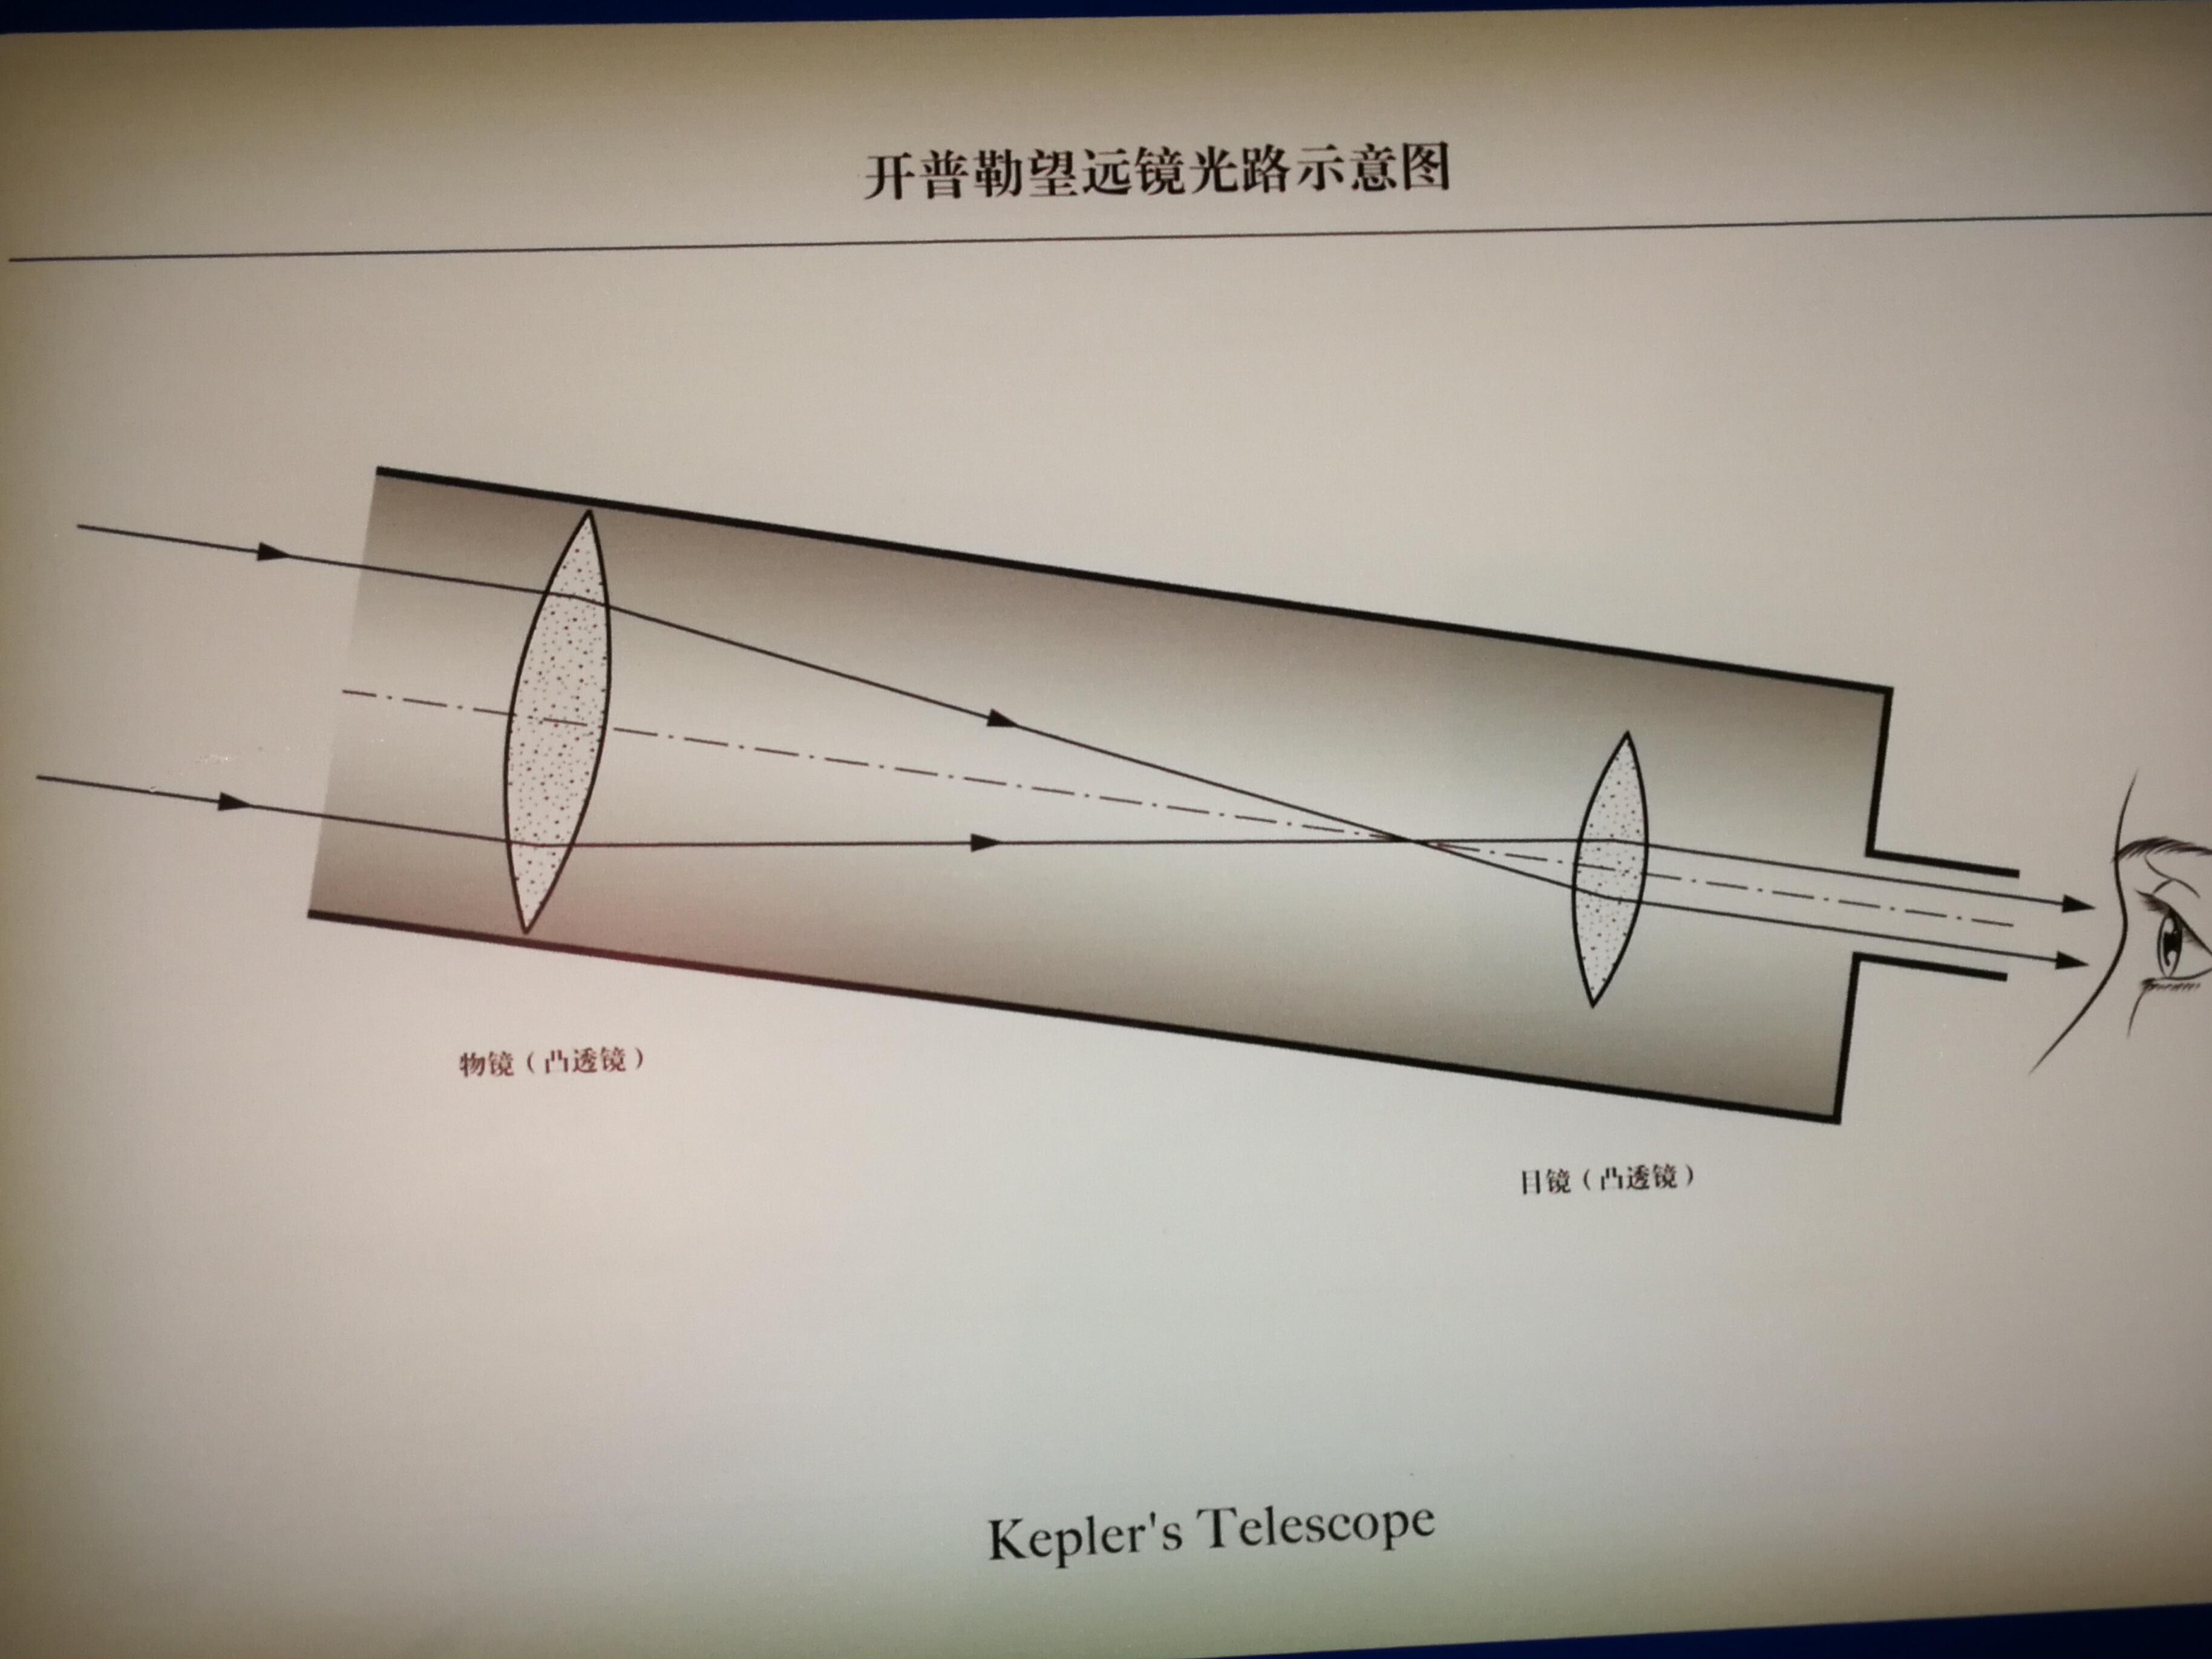 1/ 12 上海自然博物馆 伽利略望远镜@上海自然博物馆 1608年,荷兰